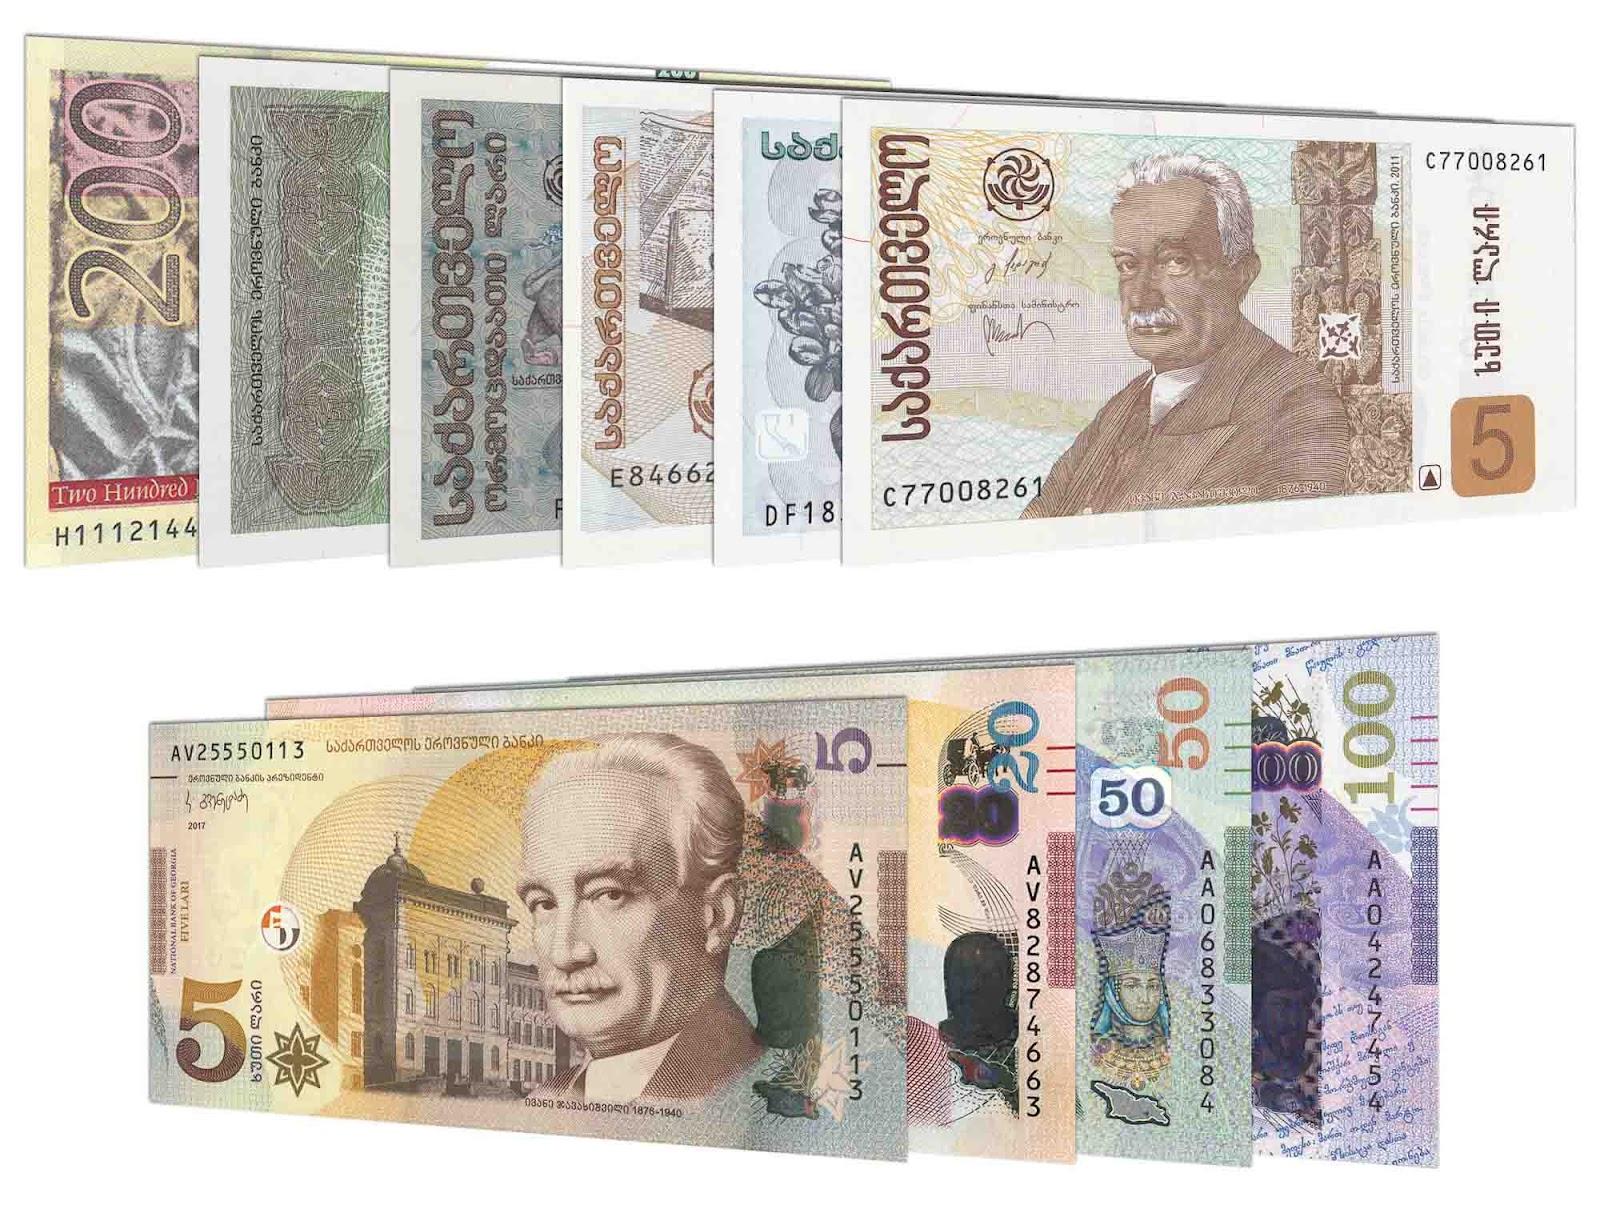 Georgian lari banknote series